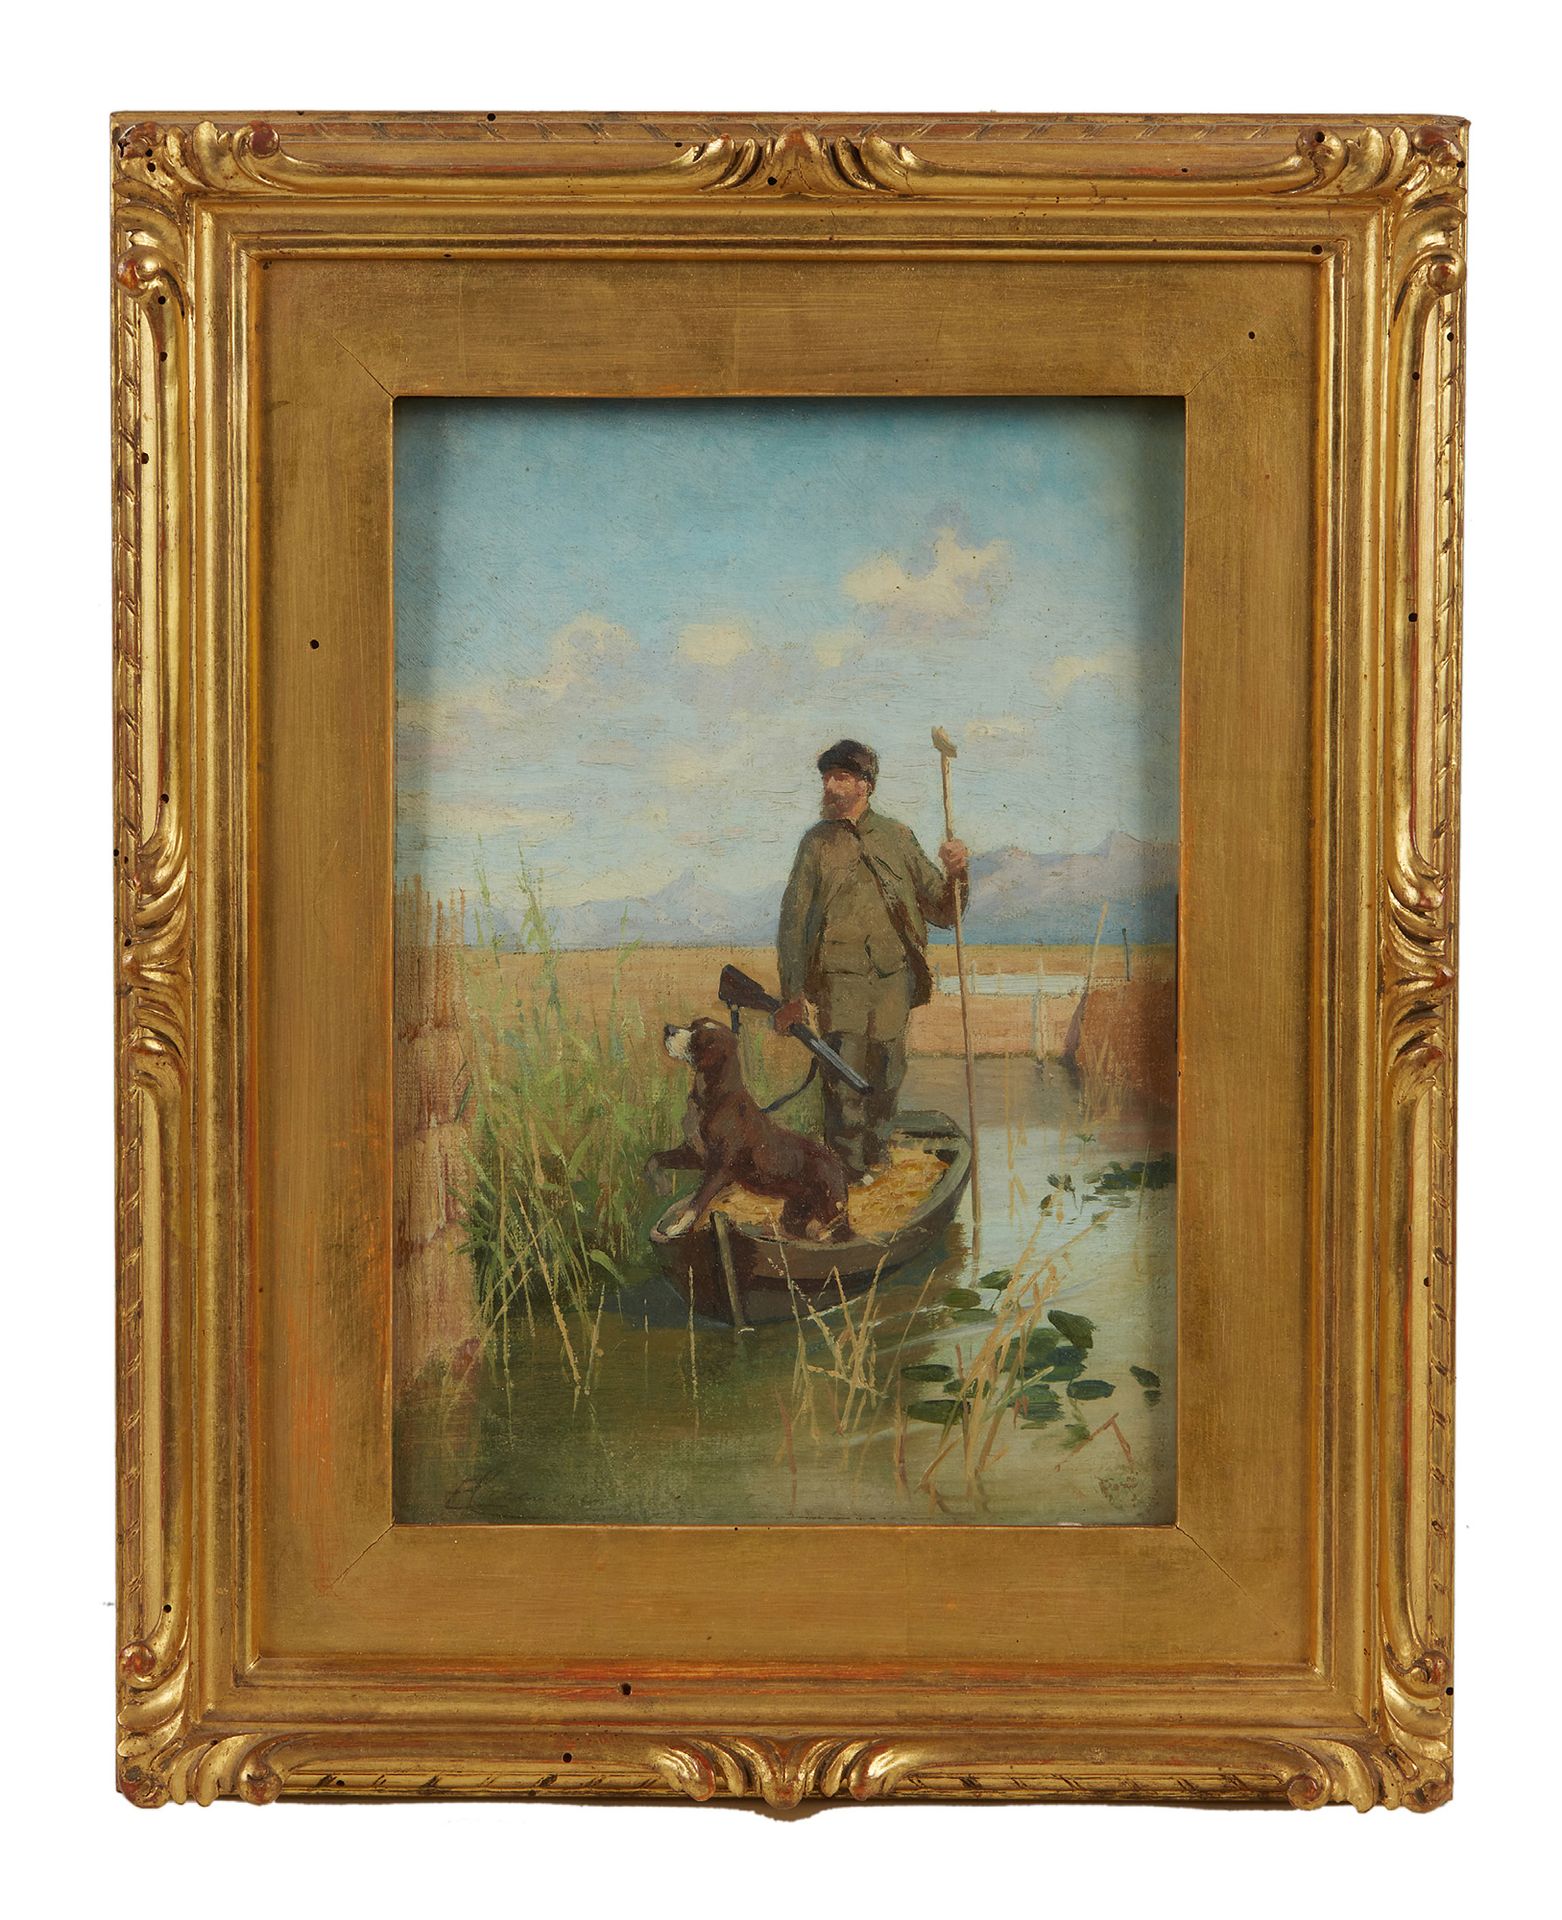 Eugenio Cecconi (1842-1903) 猎人在沼泽地里和他的狗在一起
布面油画
左下方签名
25 x 17,5 (镀金木框)